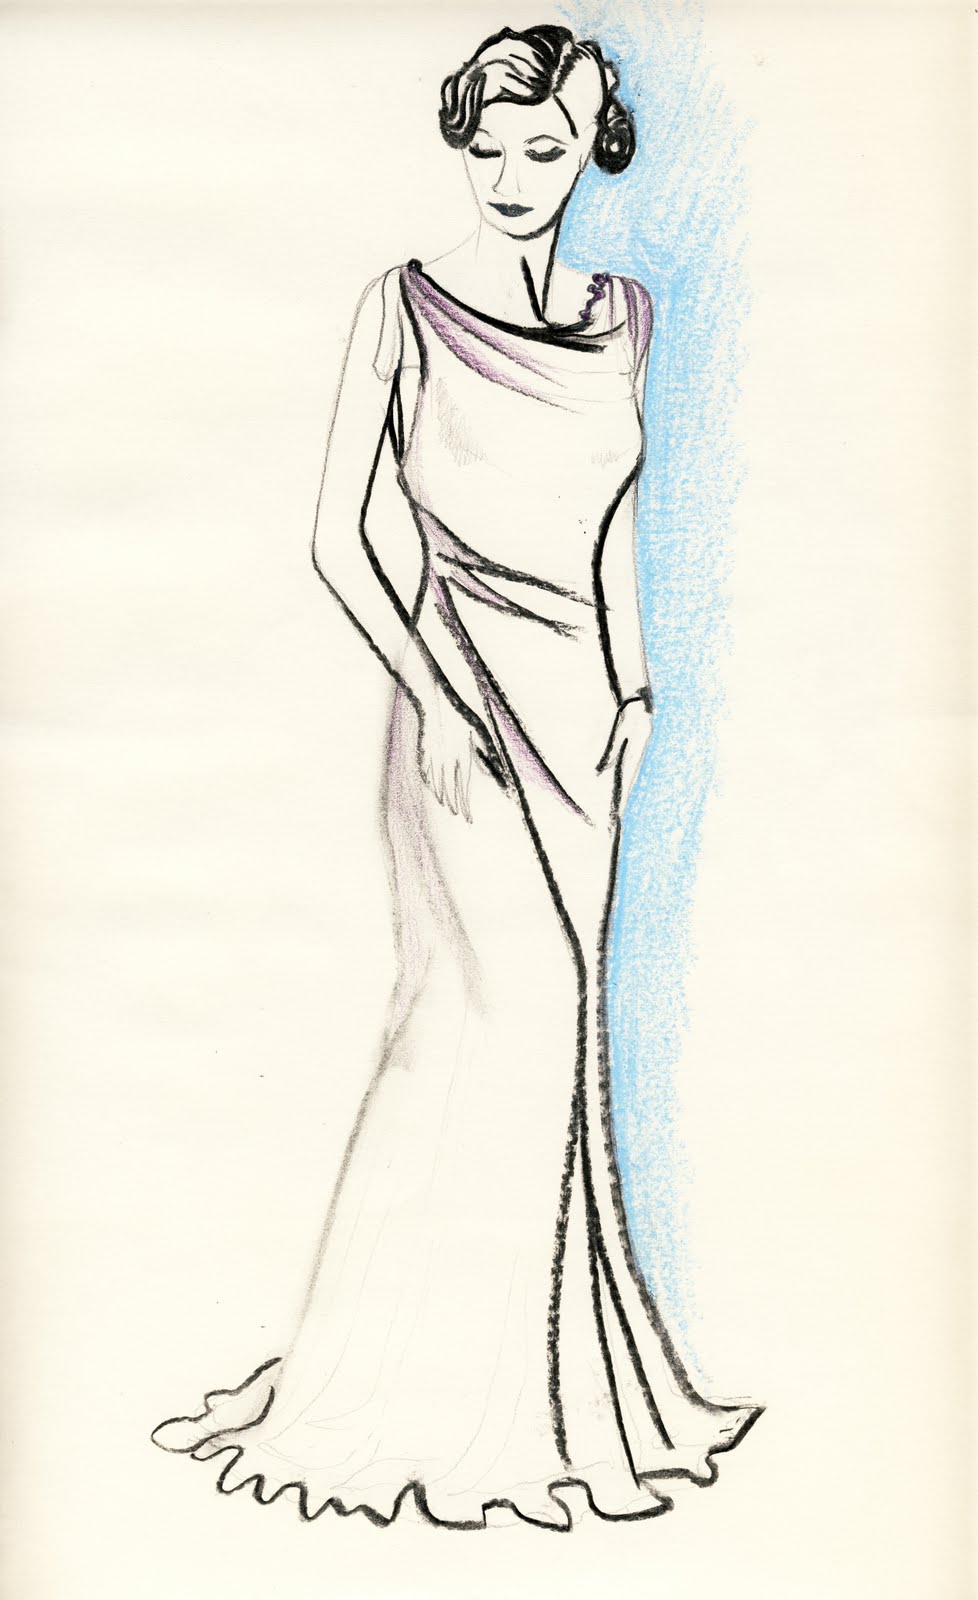 Tinsel Edwards: Drawings on Vintage Secret website!